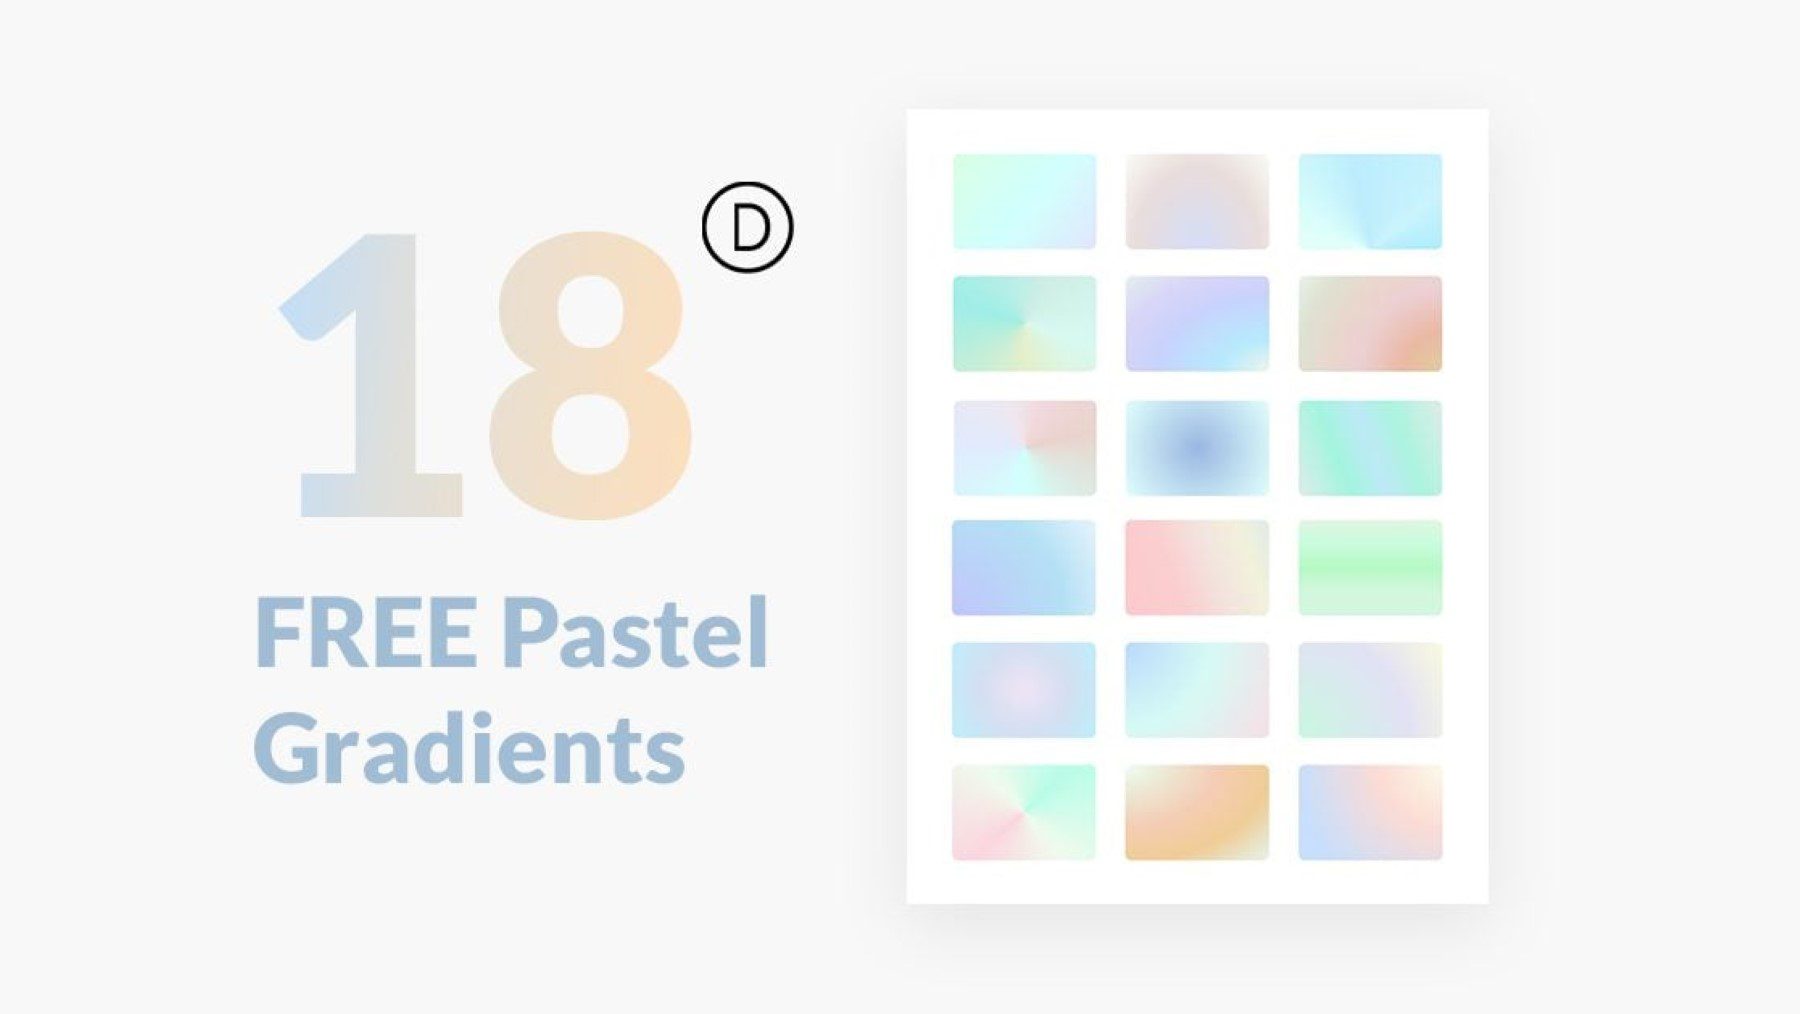 18 free pastel gradients built with Divi's gradient builder